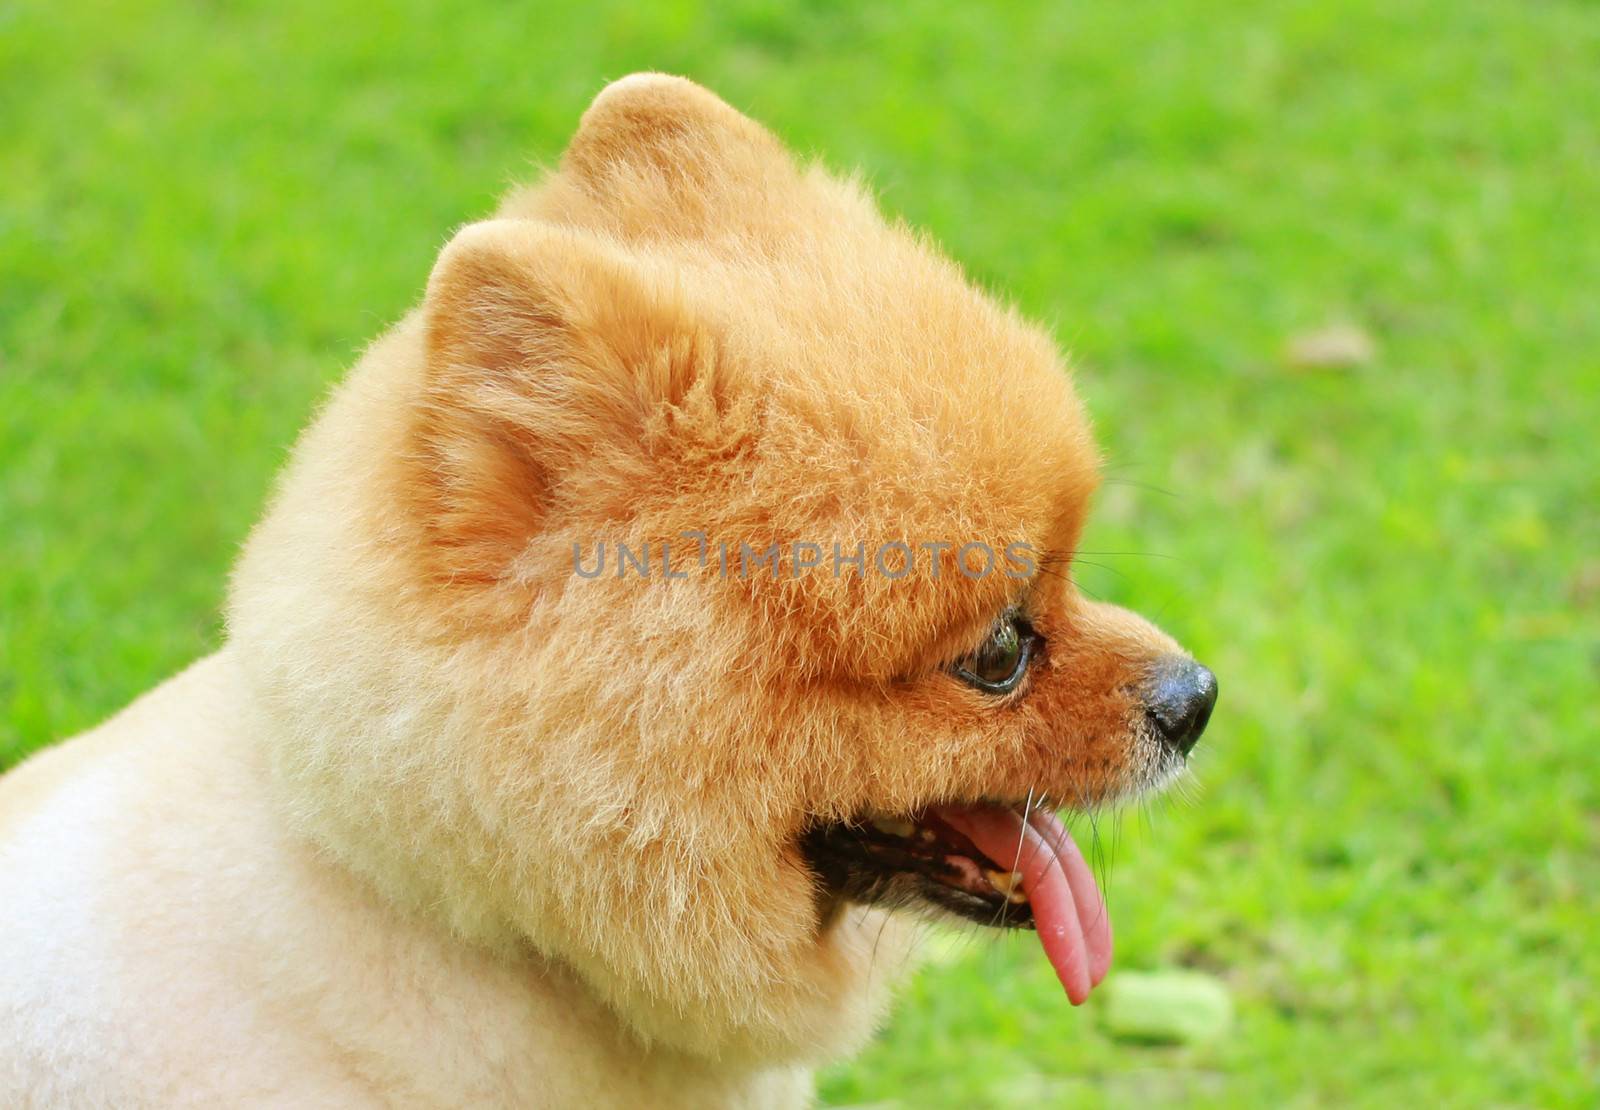 Cute face of pomeranian dog in garden by nuchylee